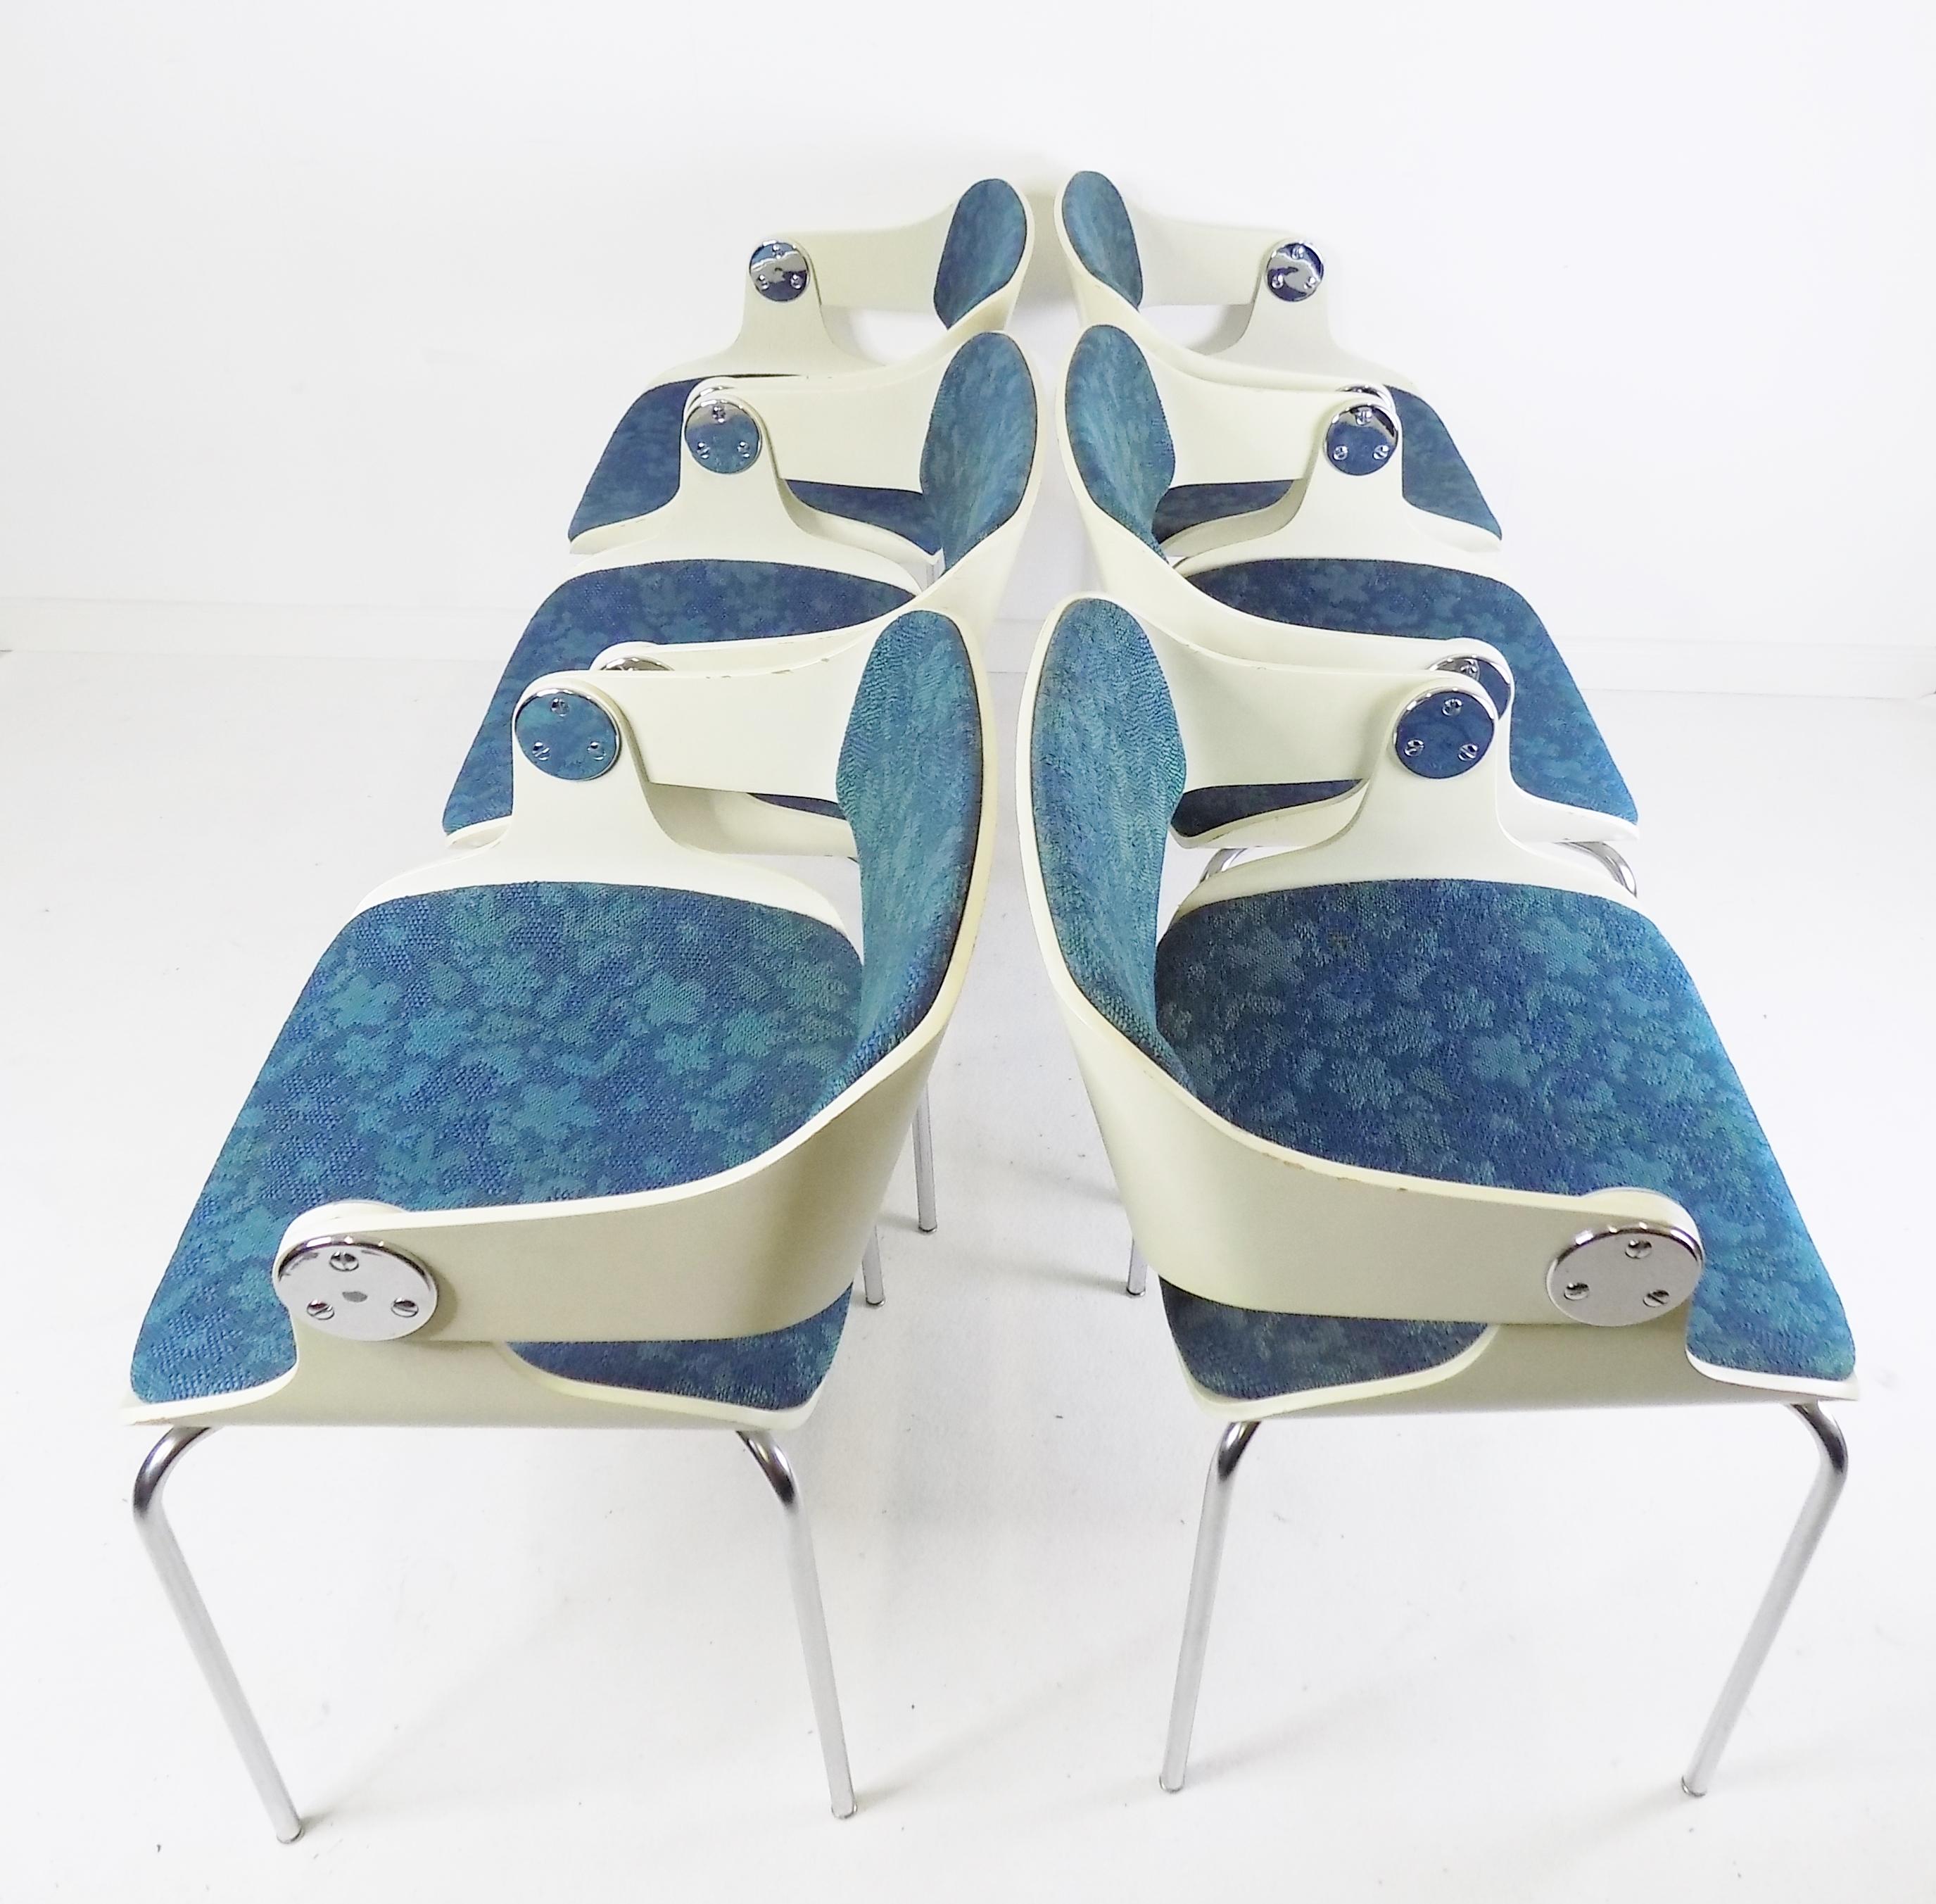 Der Satz von 6 Eugen Schmidt Stühlen, in einer fantastischen Farbkombination von weißen Holzschalen mit aquamarinblauen Sitzpads, ist in sehr gutem Zustand. Die Holzschalen weisen leichte Gebrauchsspuren auf und verleihen den Stühlen eine attraktive